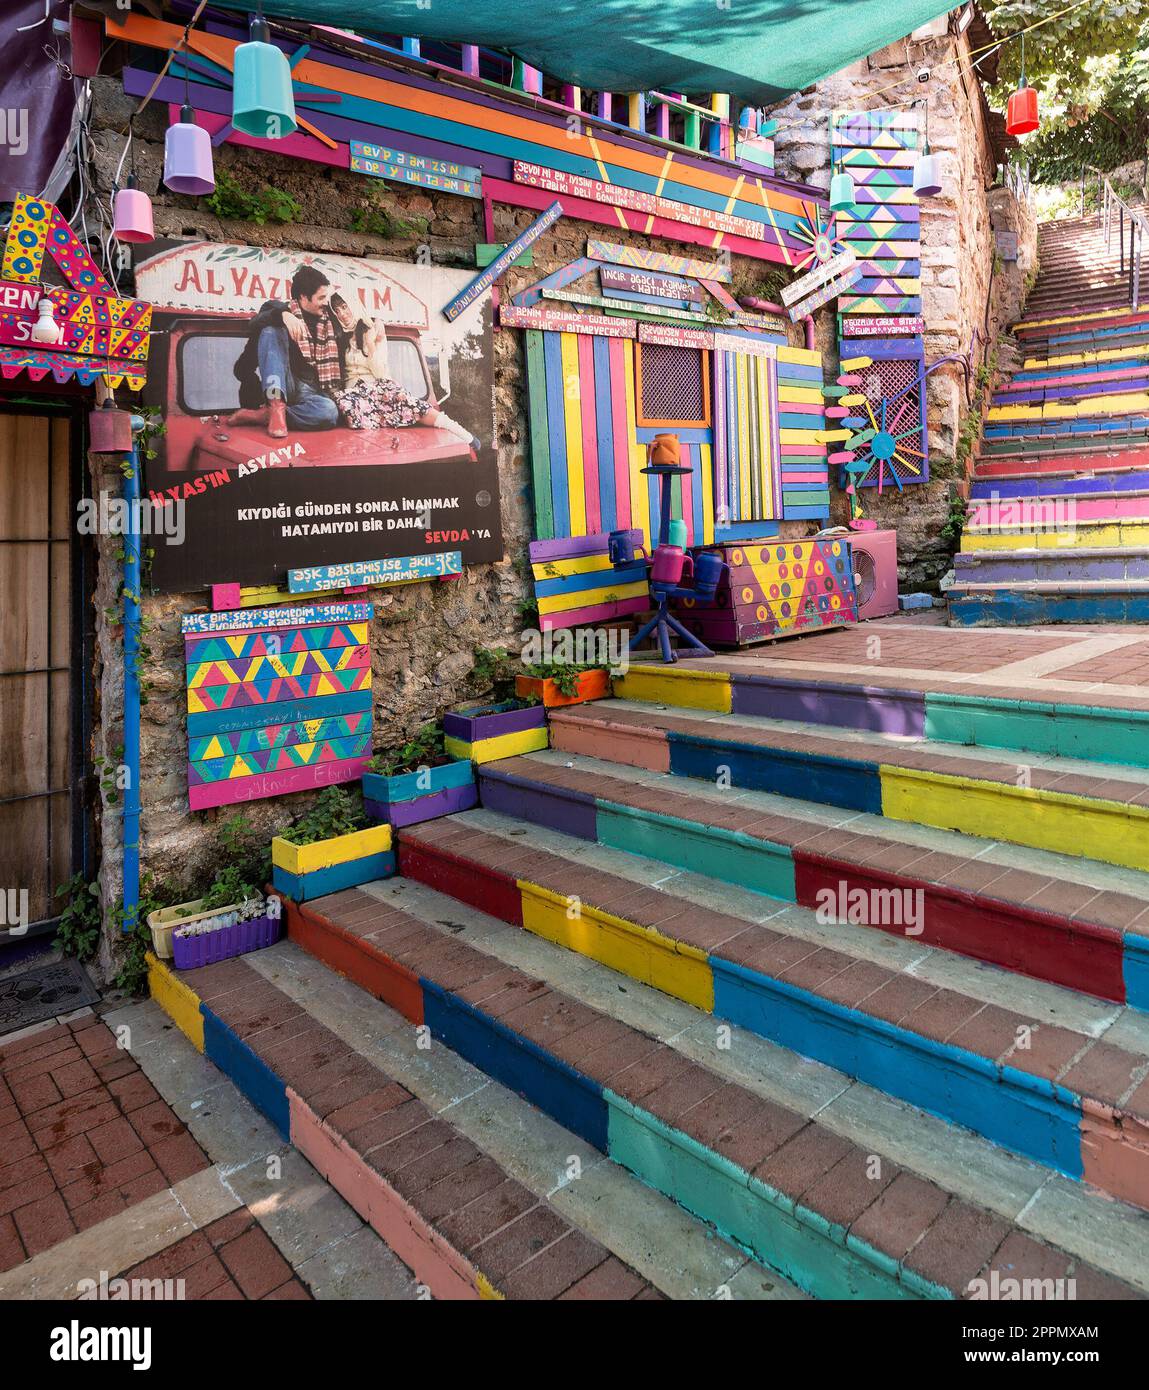 Tagsüber gibt es ein Café aus Stein mit bunten Paneelen, farbenfrohen Treppen und Balat District, Istanbul, Türkei Stockfoto